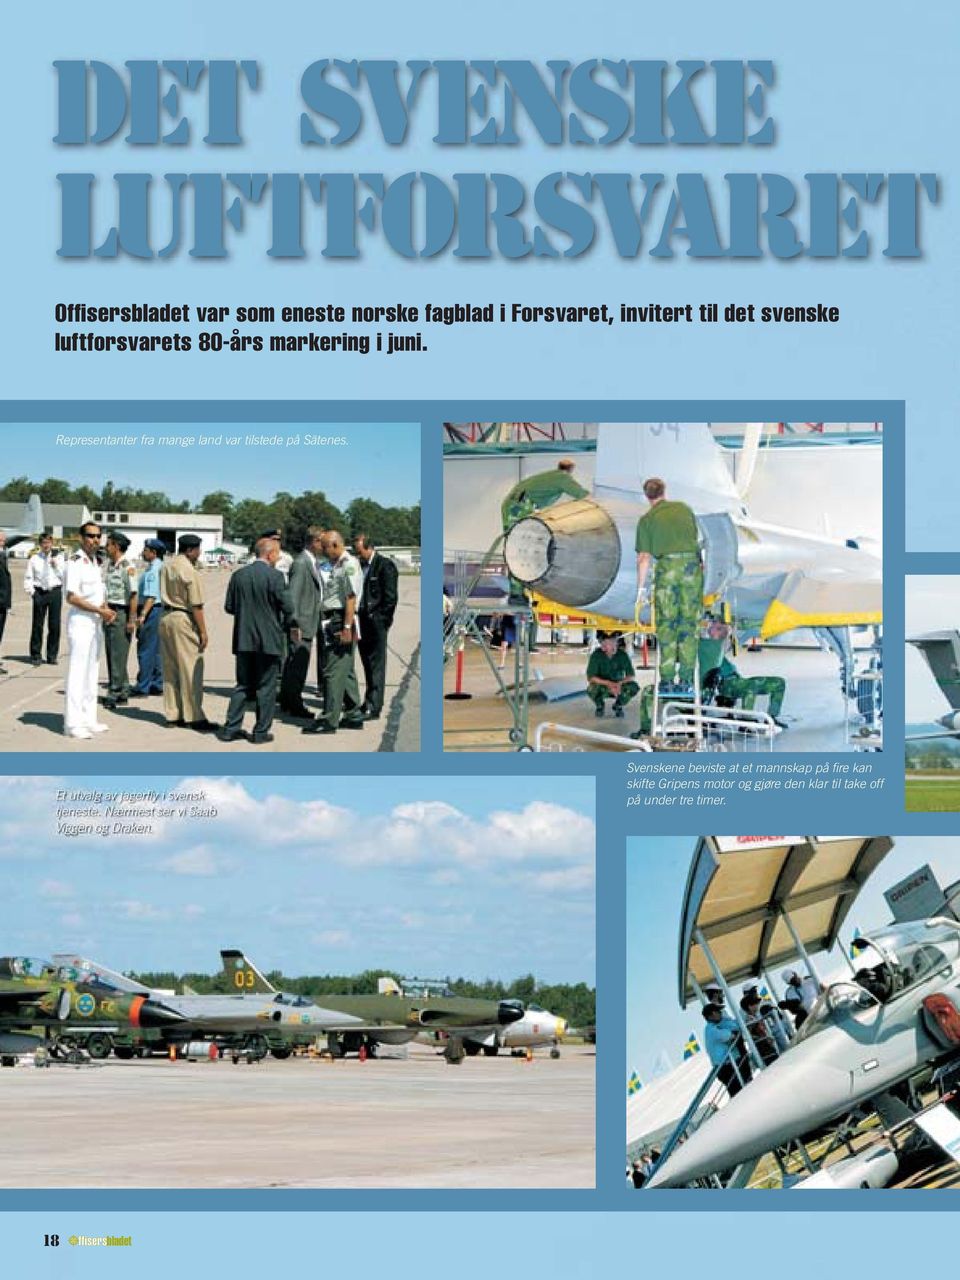 Et utvalg av jagerfly i svensk tjeneste. Nærmest ser vi Saab Viggen og Draken.